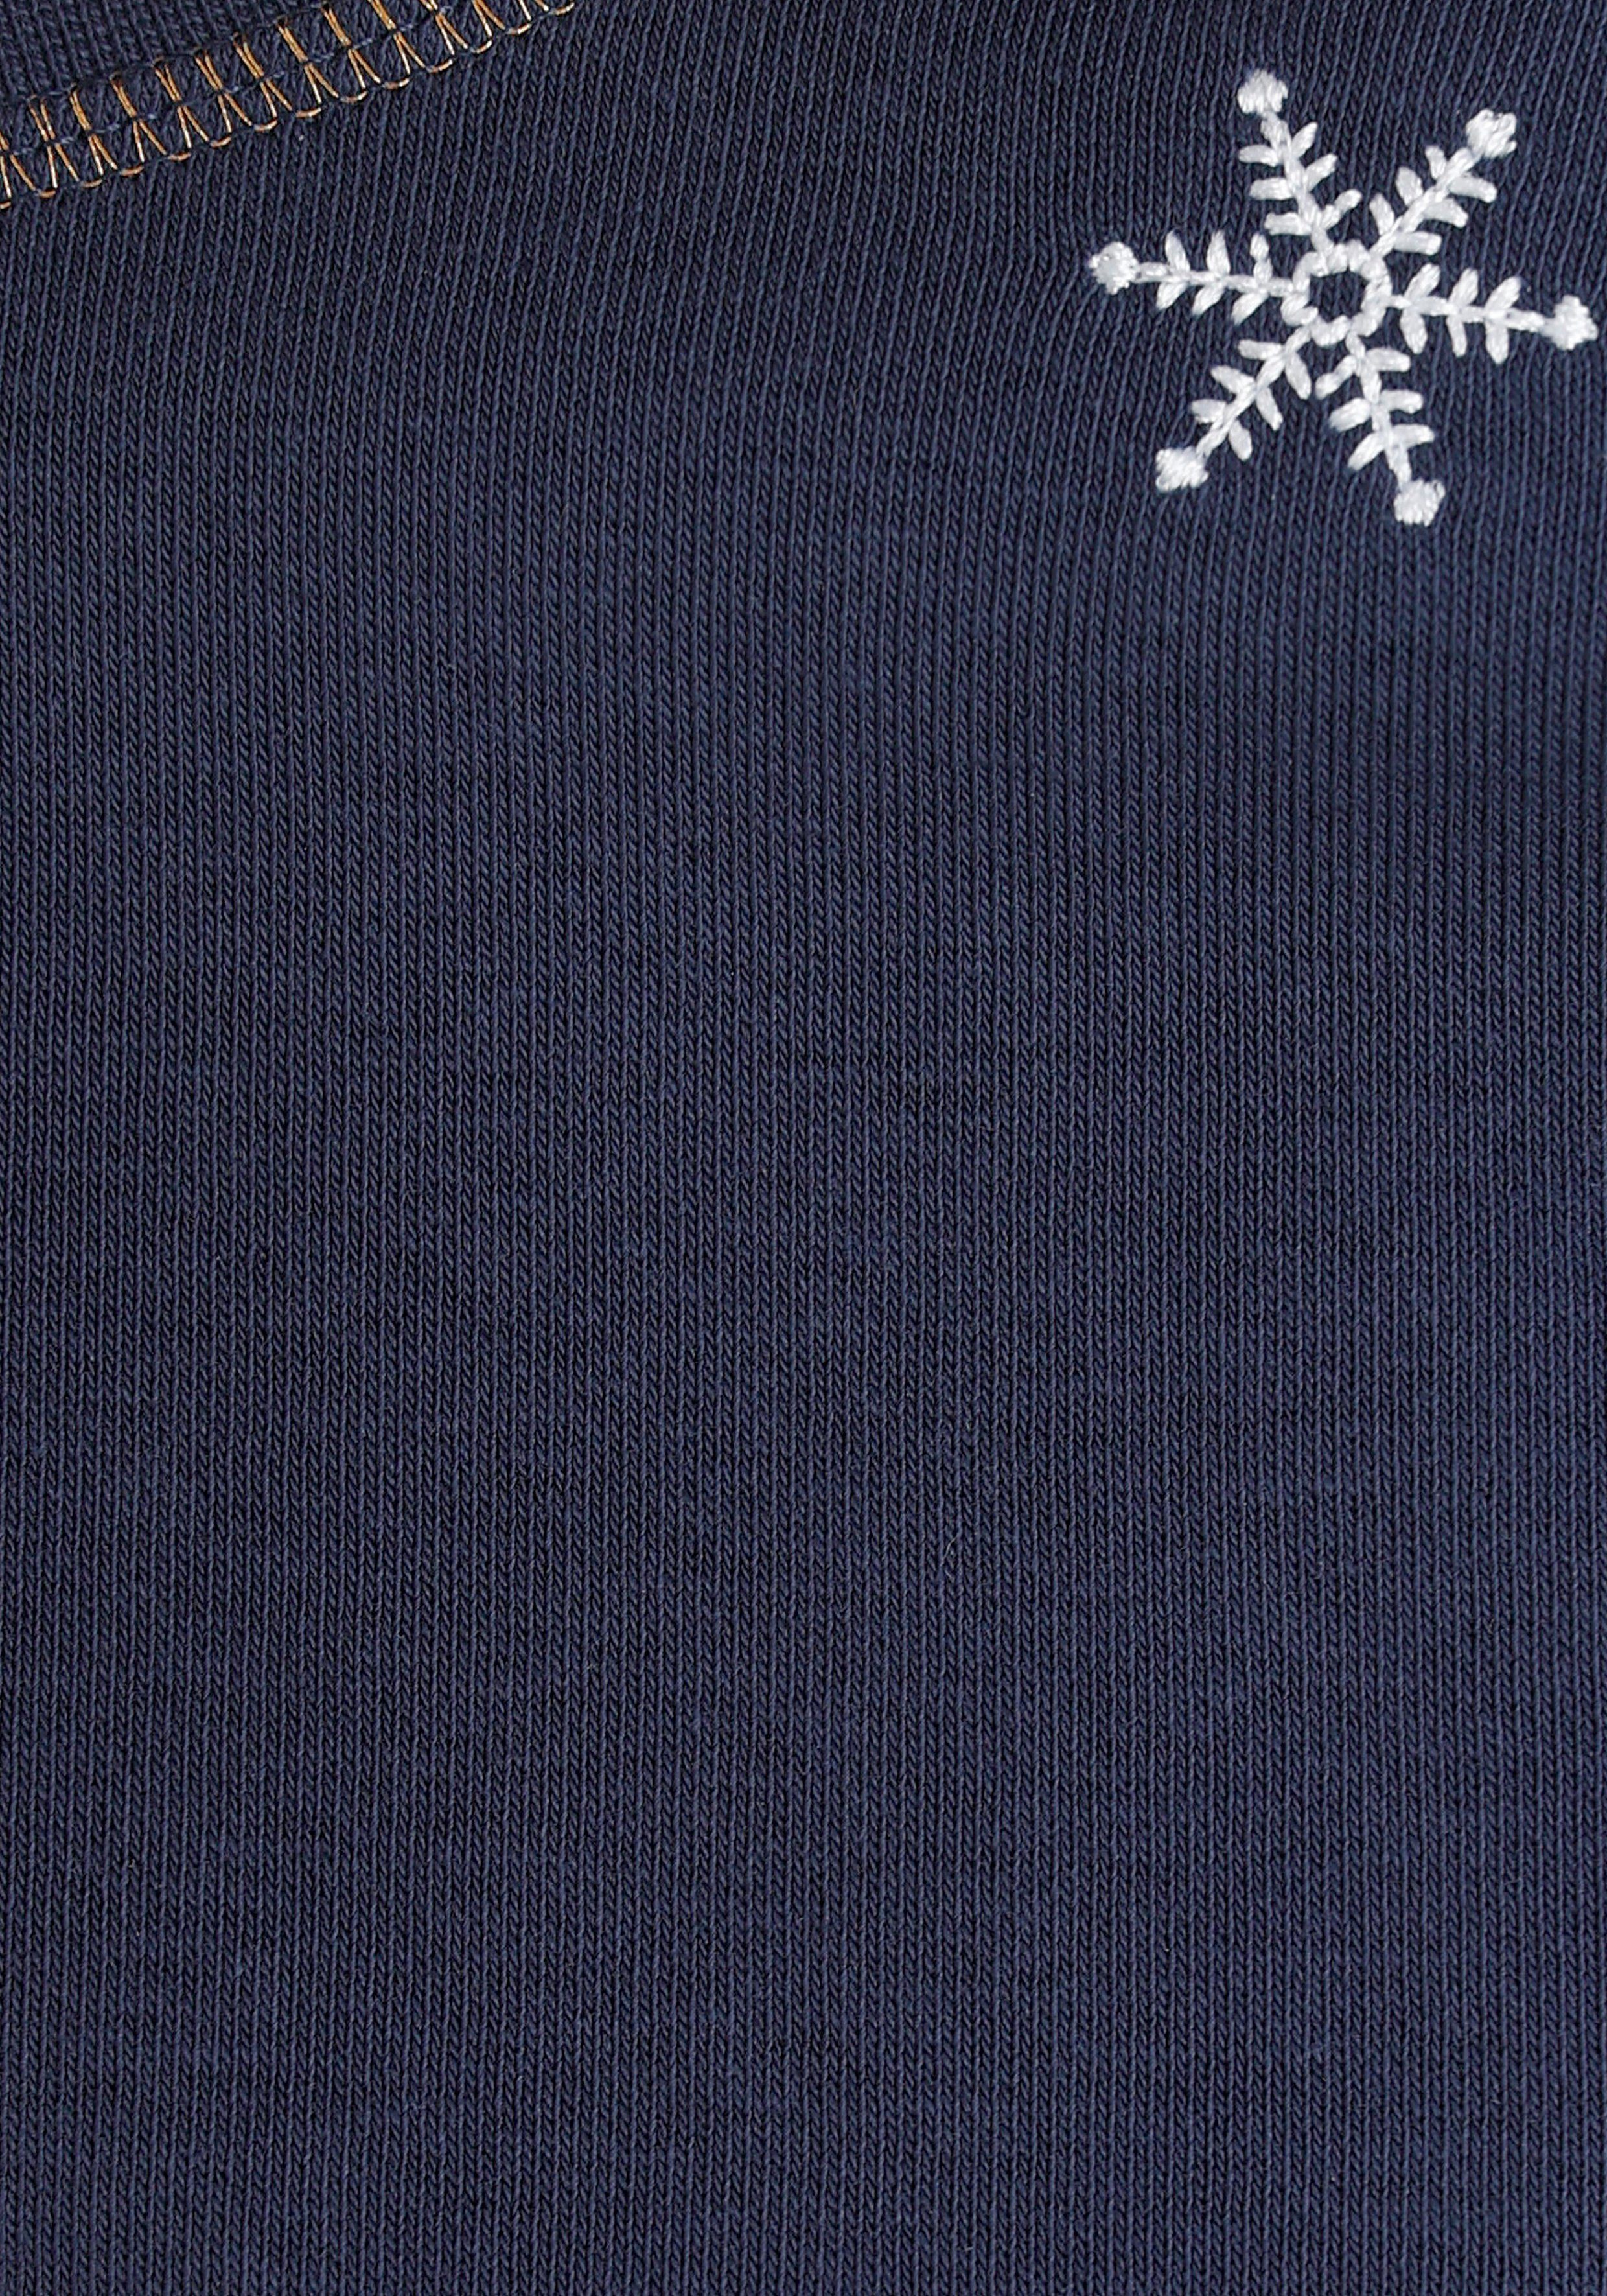 NEUE Sweatshirt Schneeflocken DELMAO mit MARKE! bestickten - edel